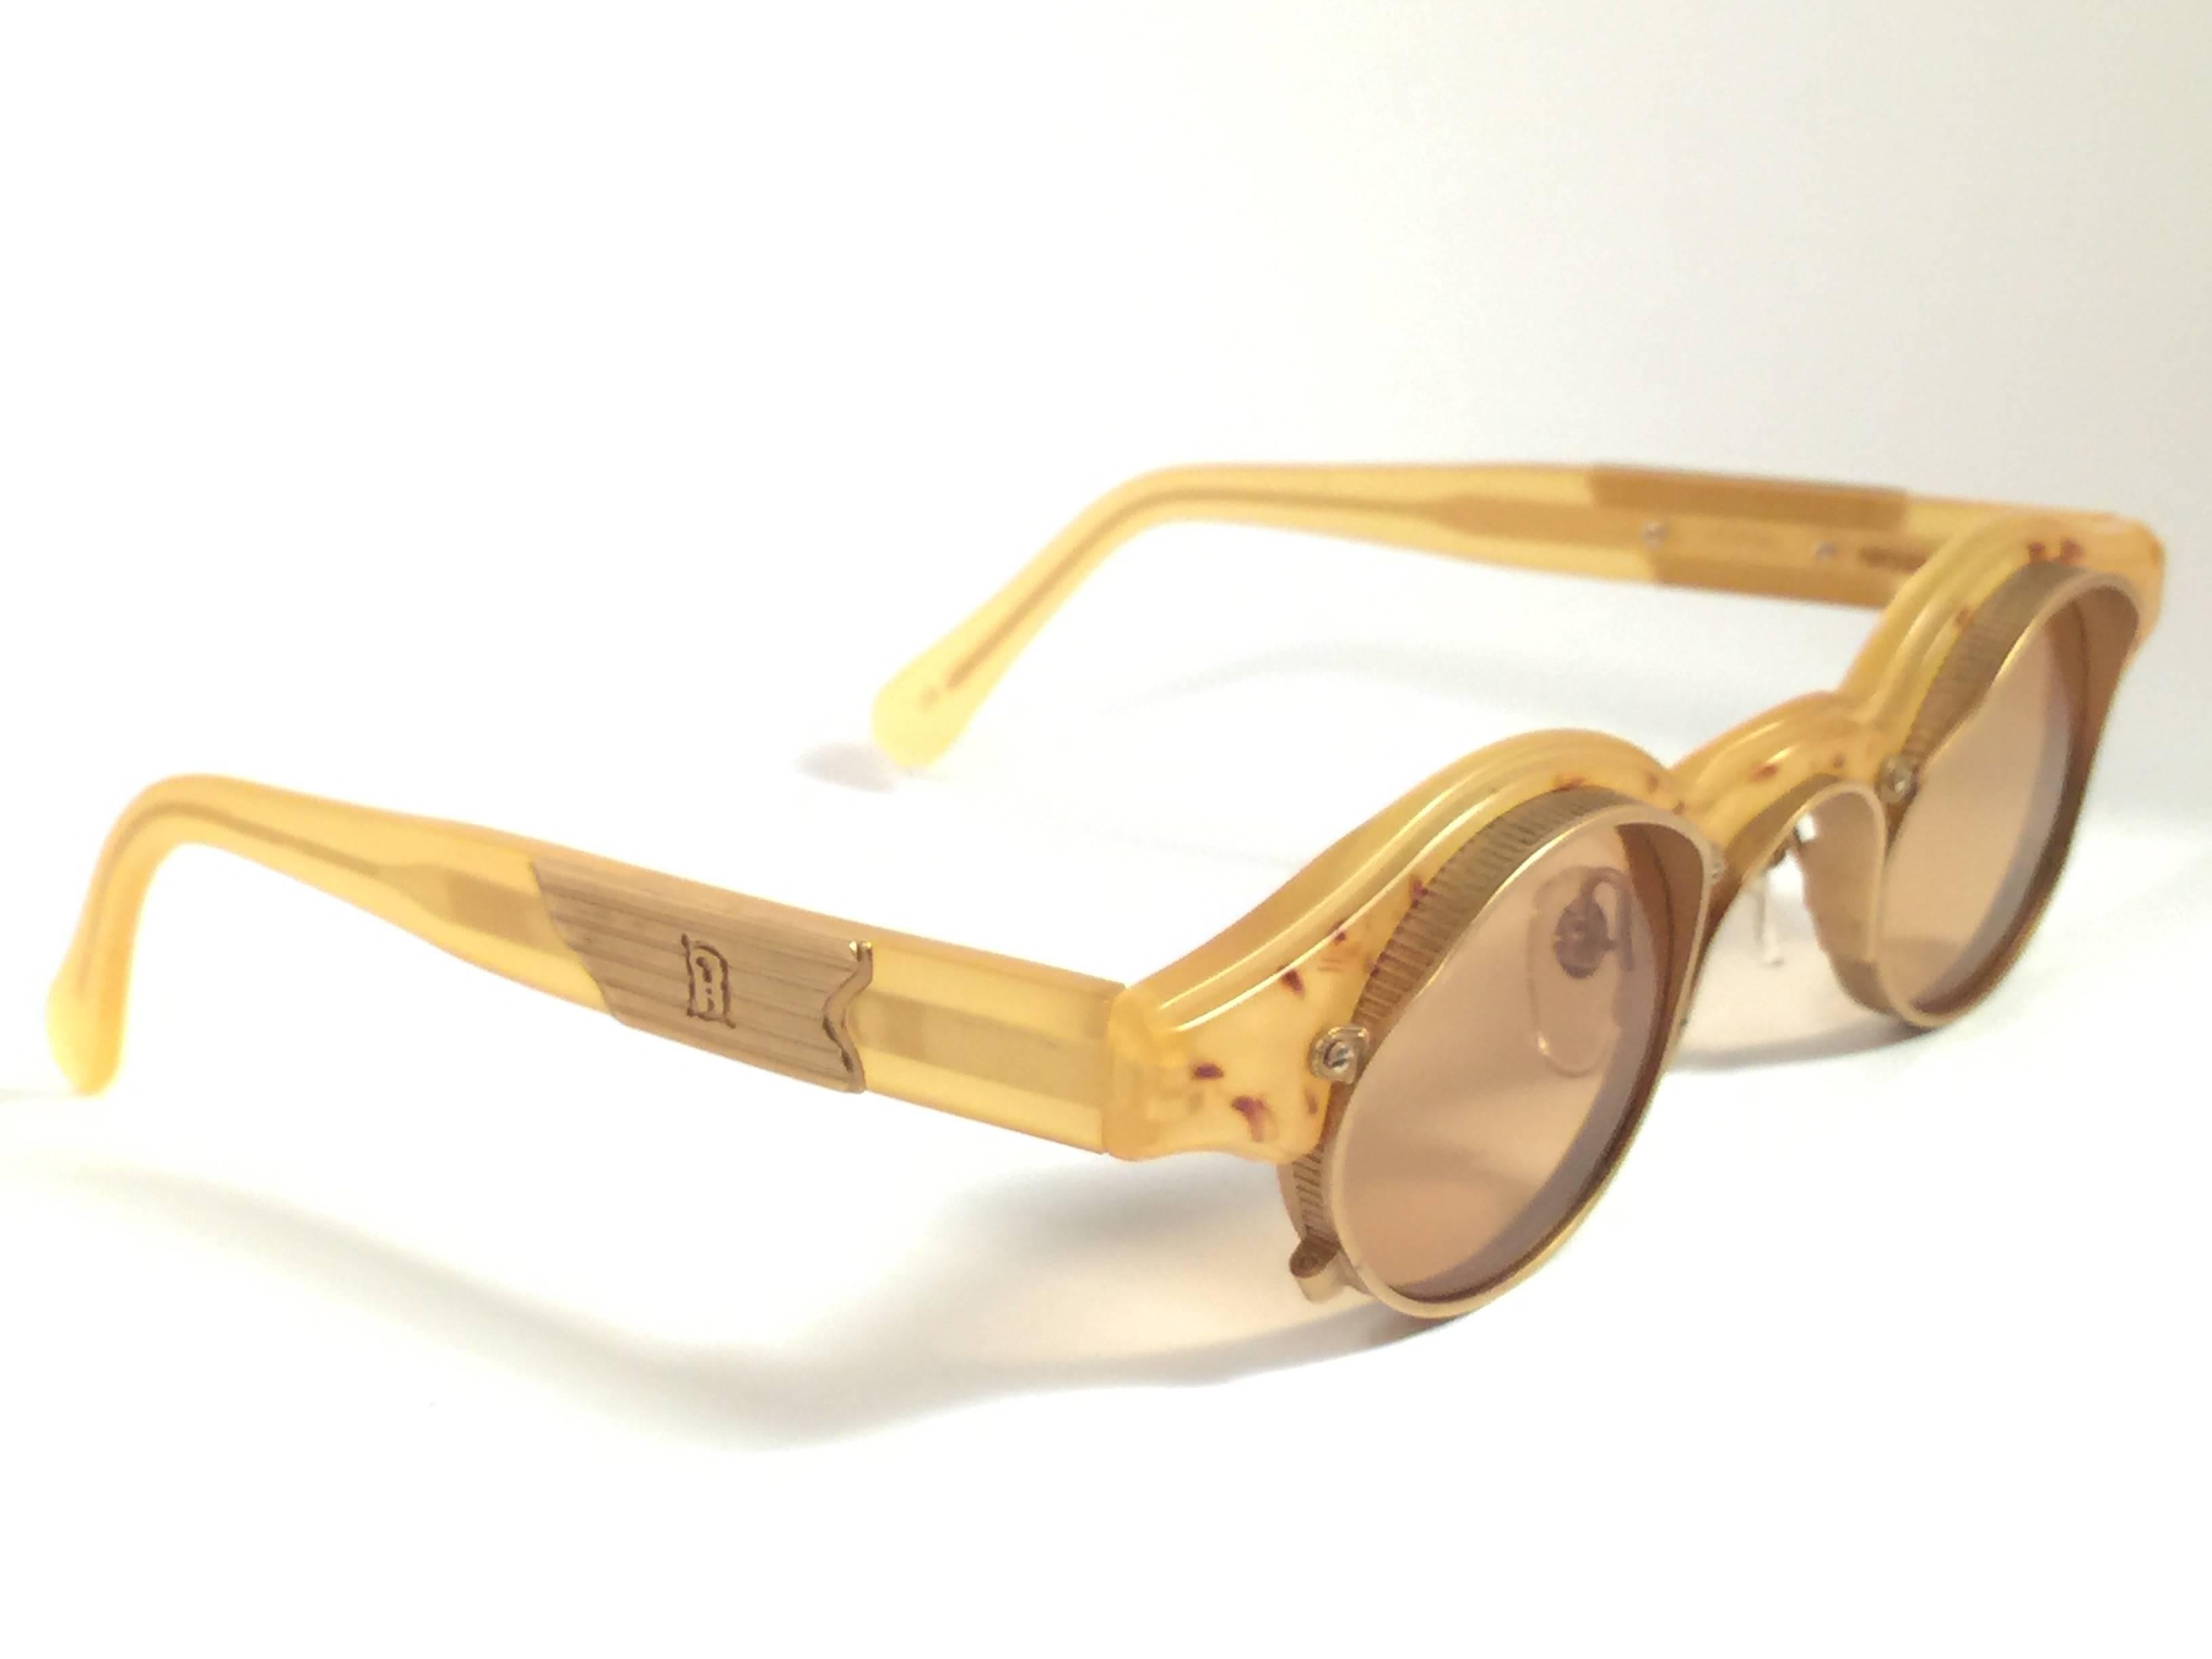 New vintage made in japan Matsuda Sonnenbrille. Runder klarer gelber Rahmen mit goldenen Einsätzen, der ein makelloses Paar bernsteinfarbener Gläser hält.
 
Neu, nie getragen oder ausgestellt. 
 
Auf dem rechten Innenbügel steht 